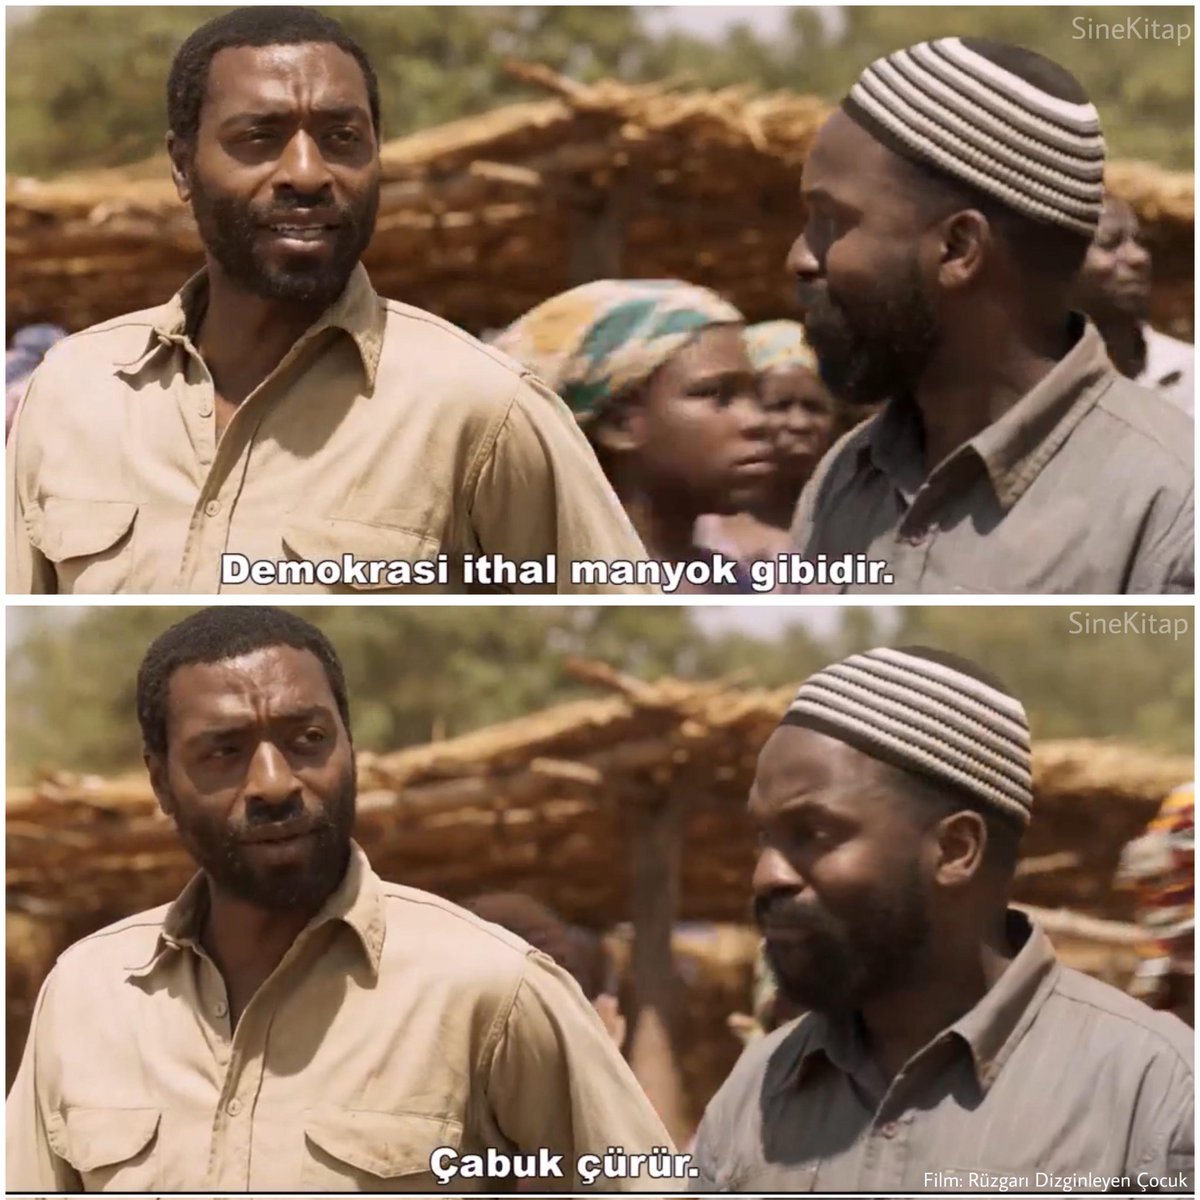 Chiwetel Ejiofor'un yönettiği Rüzgarı Dizginleyen çocuk filminden bir replik.
#filmokuma #filmanaliz #sinekitap #heranoku #sinemafilm #film #tahlil #rüzgarıdizginleyençocuk